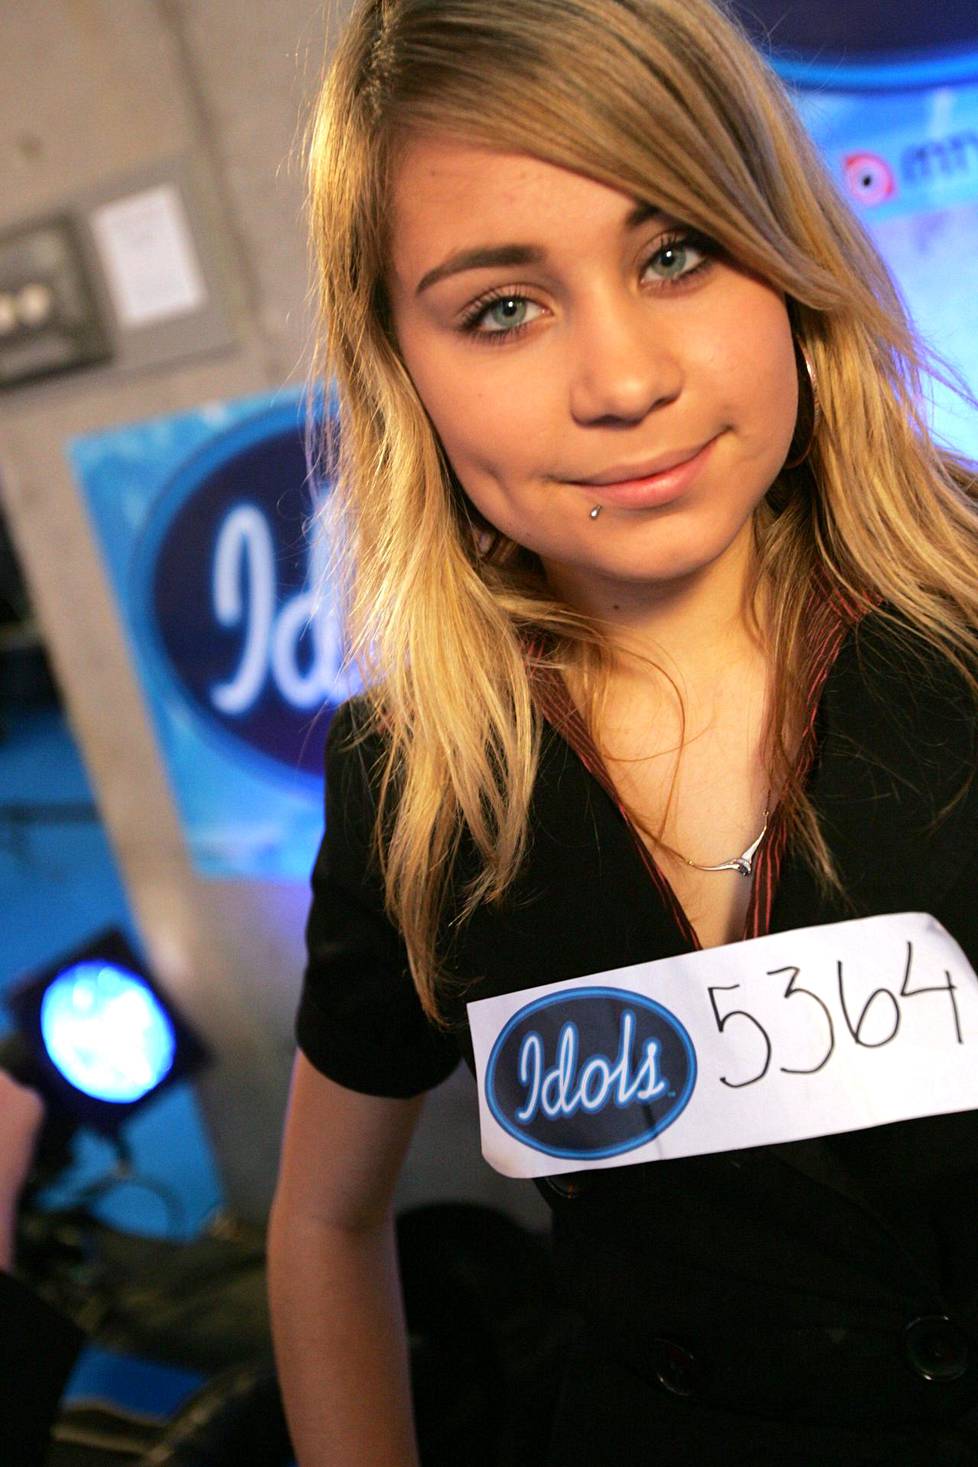 Tästä se kaikki alkoi! Numerolla 5364 kisannut Anna Abreu 16-vuotiaana Idolsin teatteriviikonlopulla.